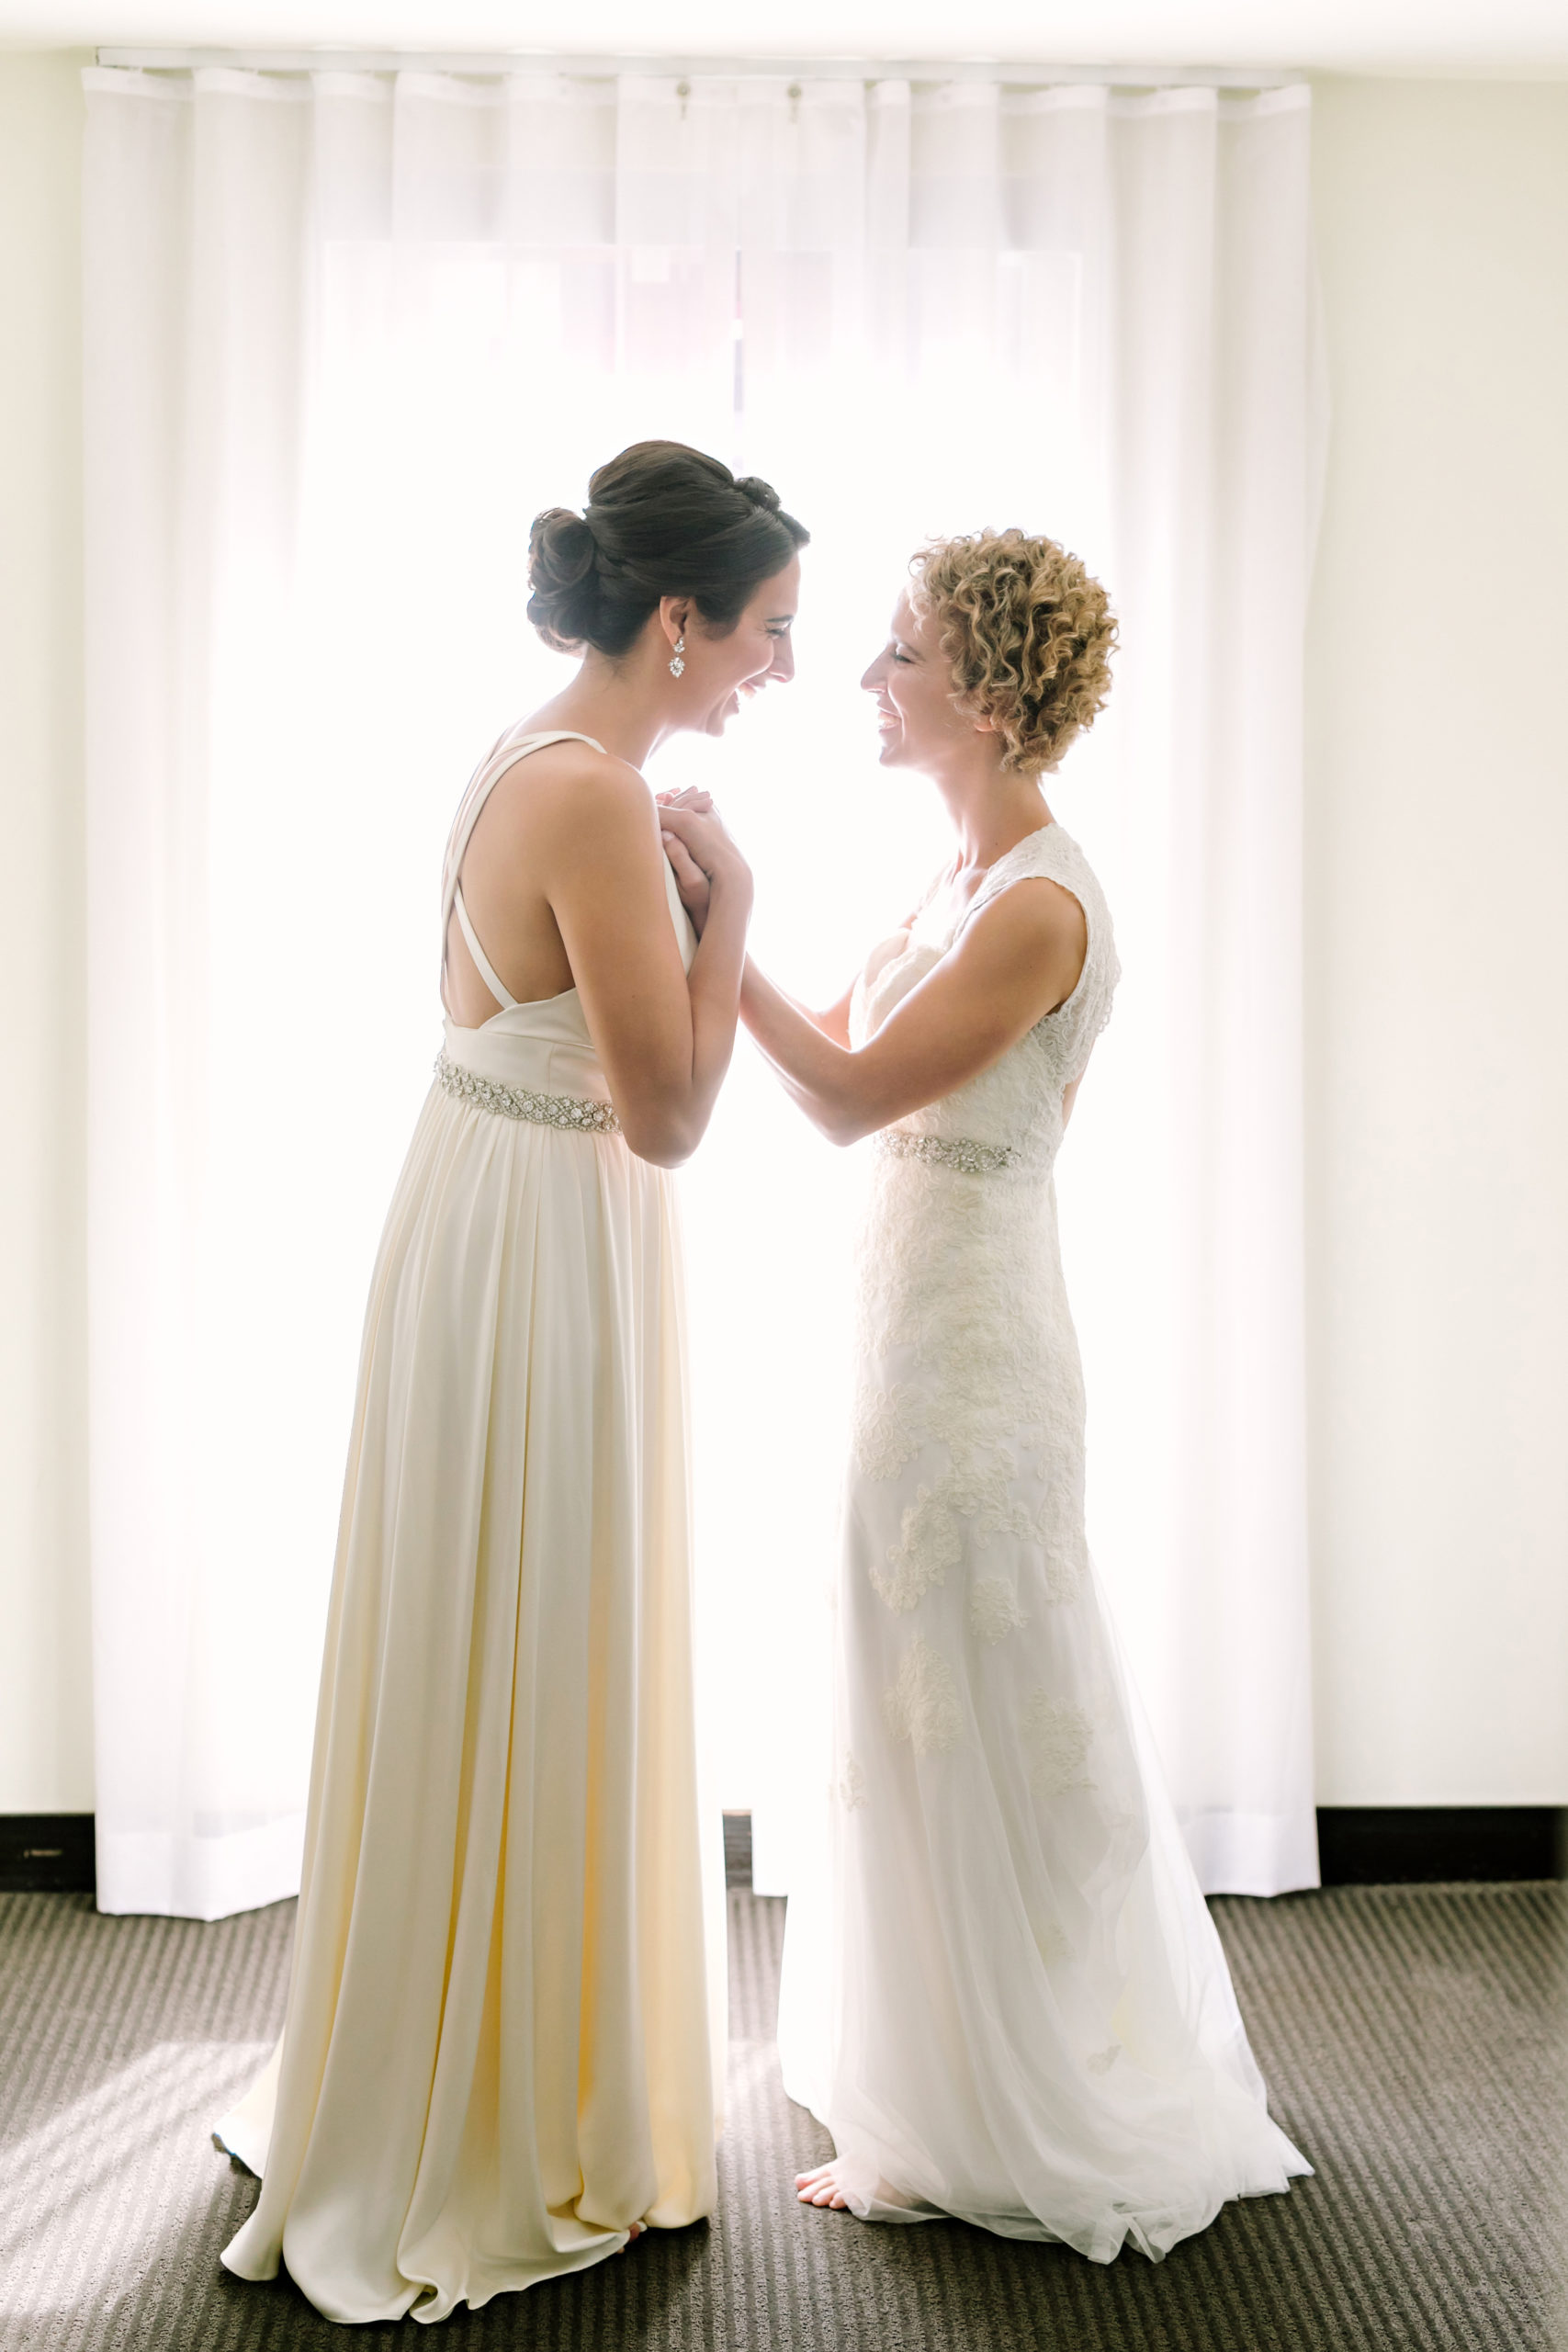 Aleida & Lily's Wedding | Julie Wilhite Photography | Austin Wedding Photographer | via juliewilhite.com